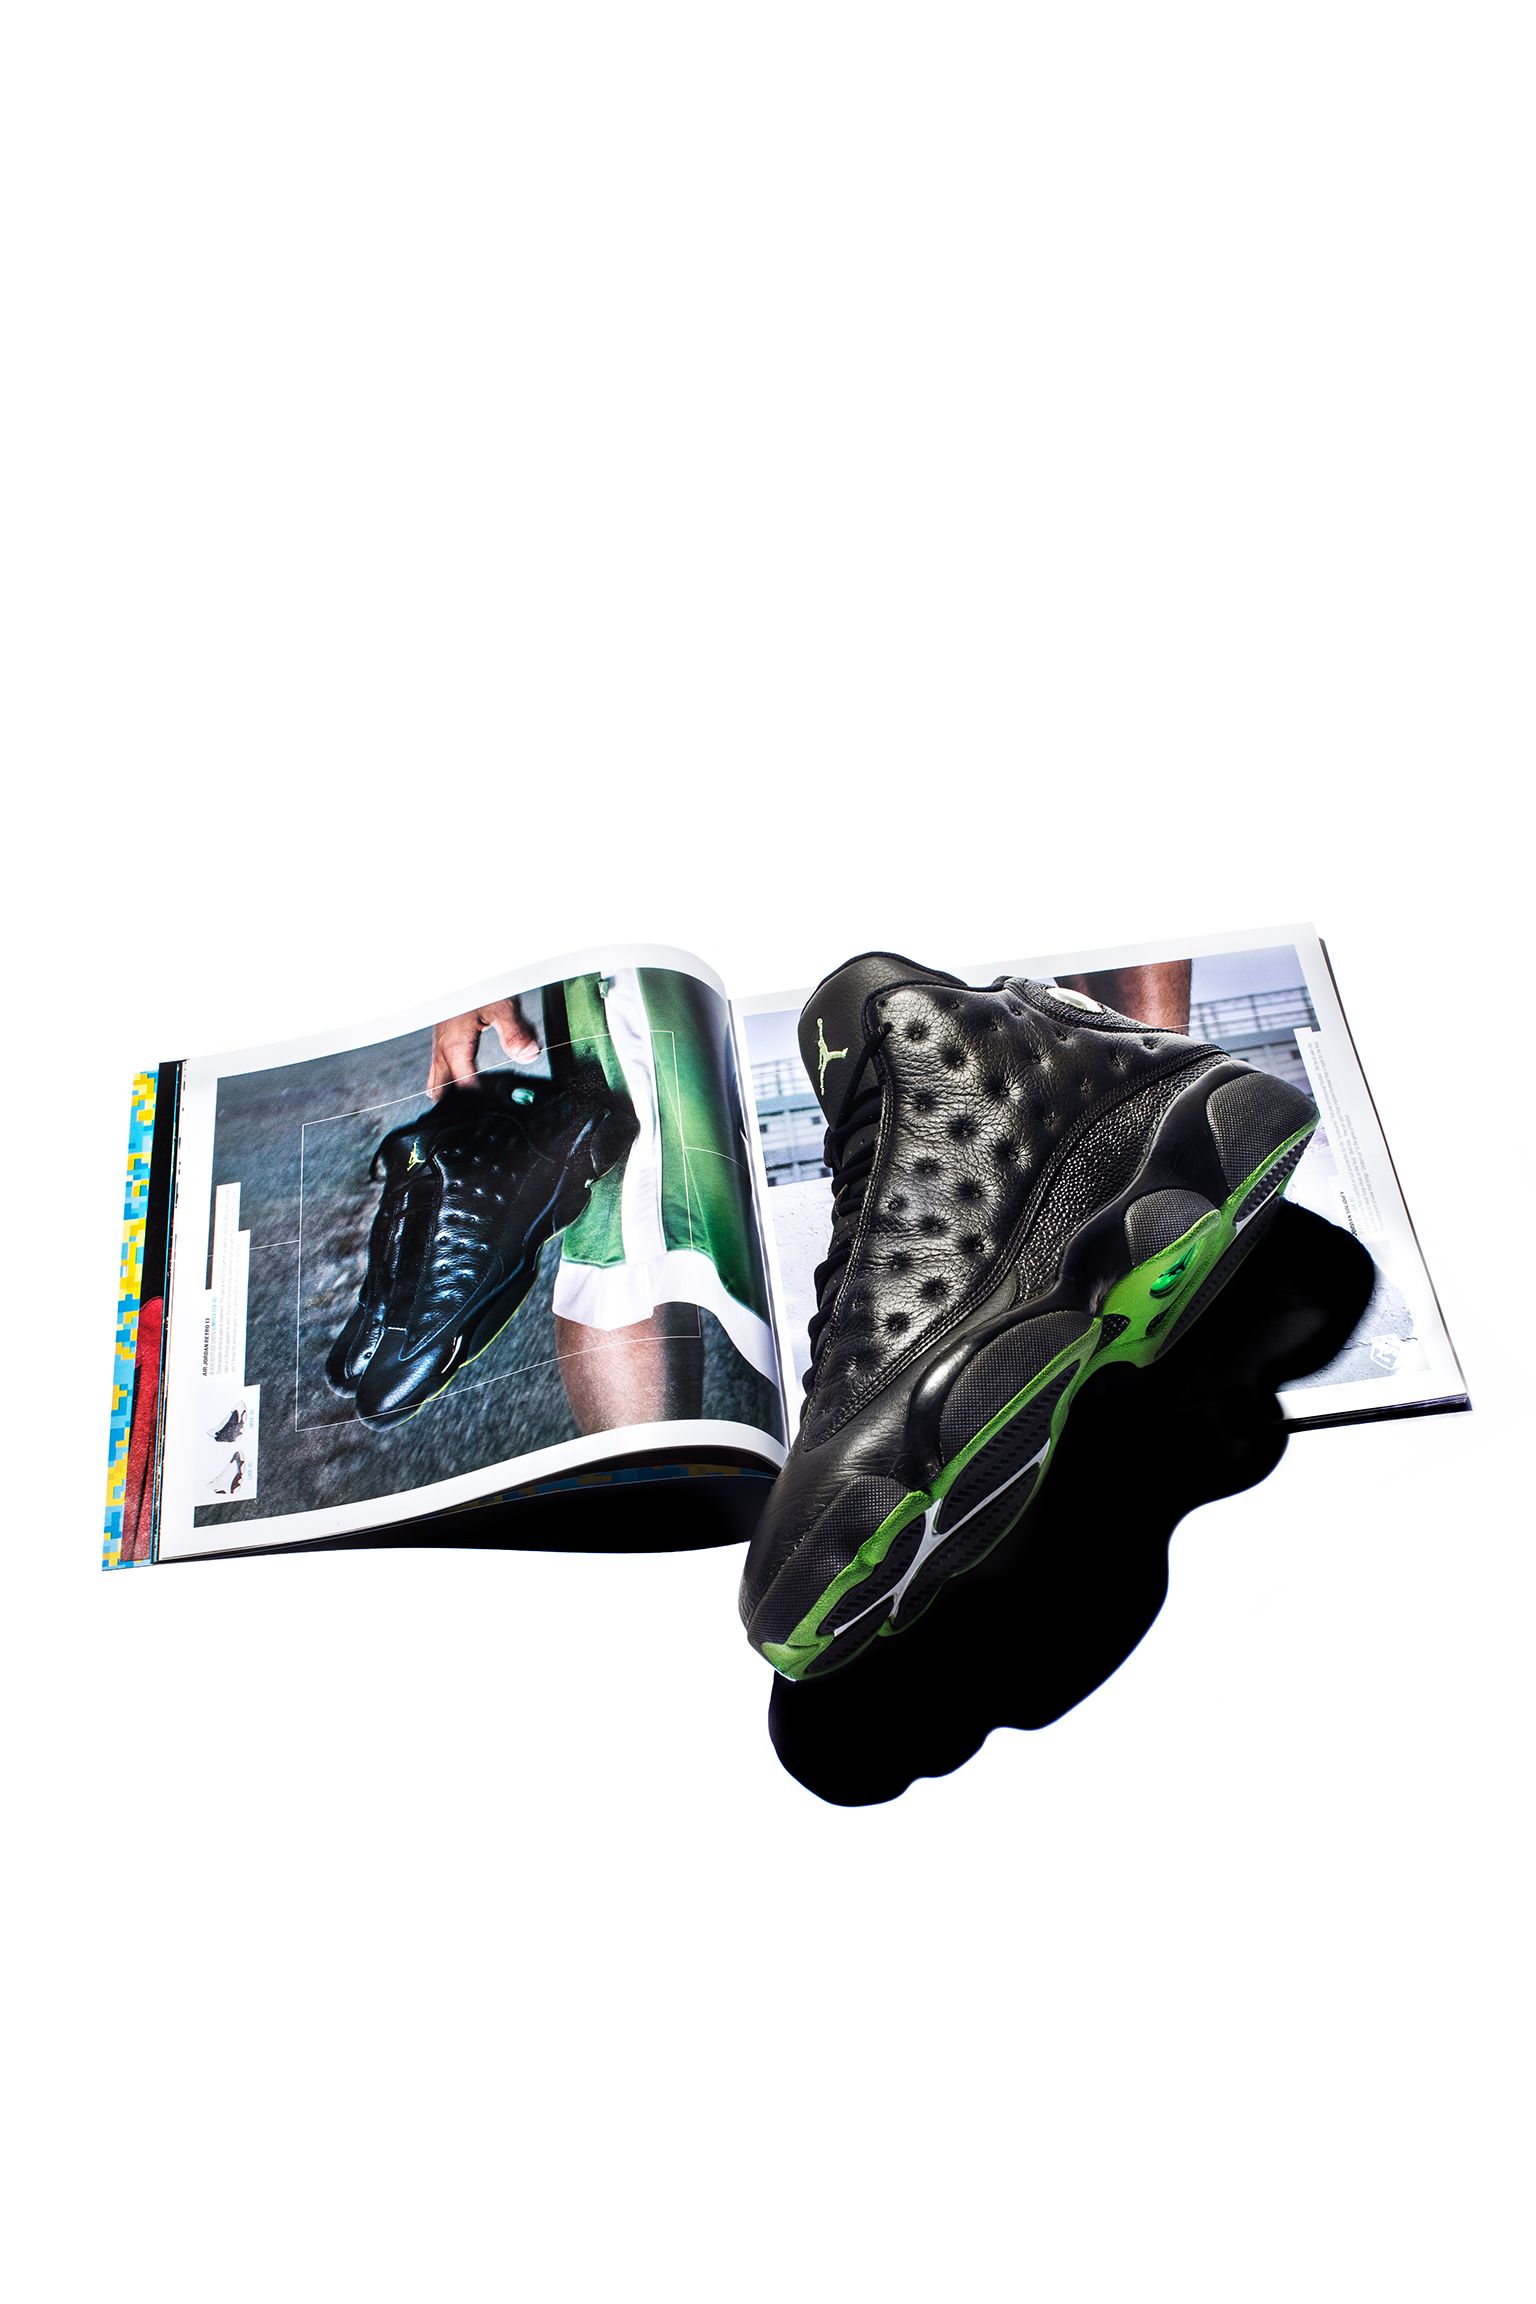 Air Jordan Retro 13 Black Cat/On Feet 